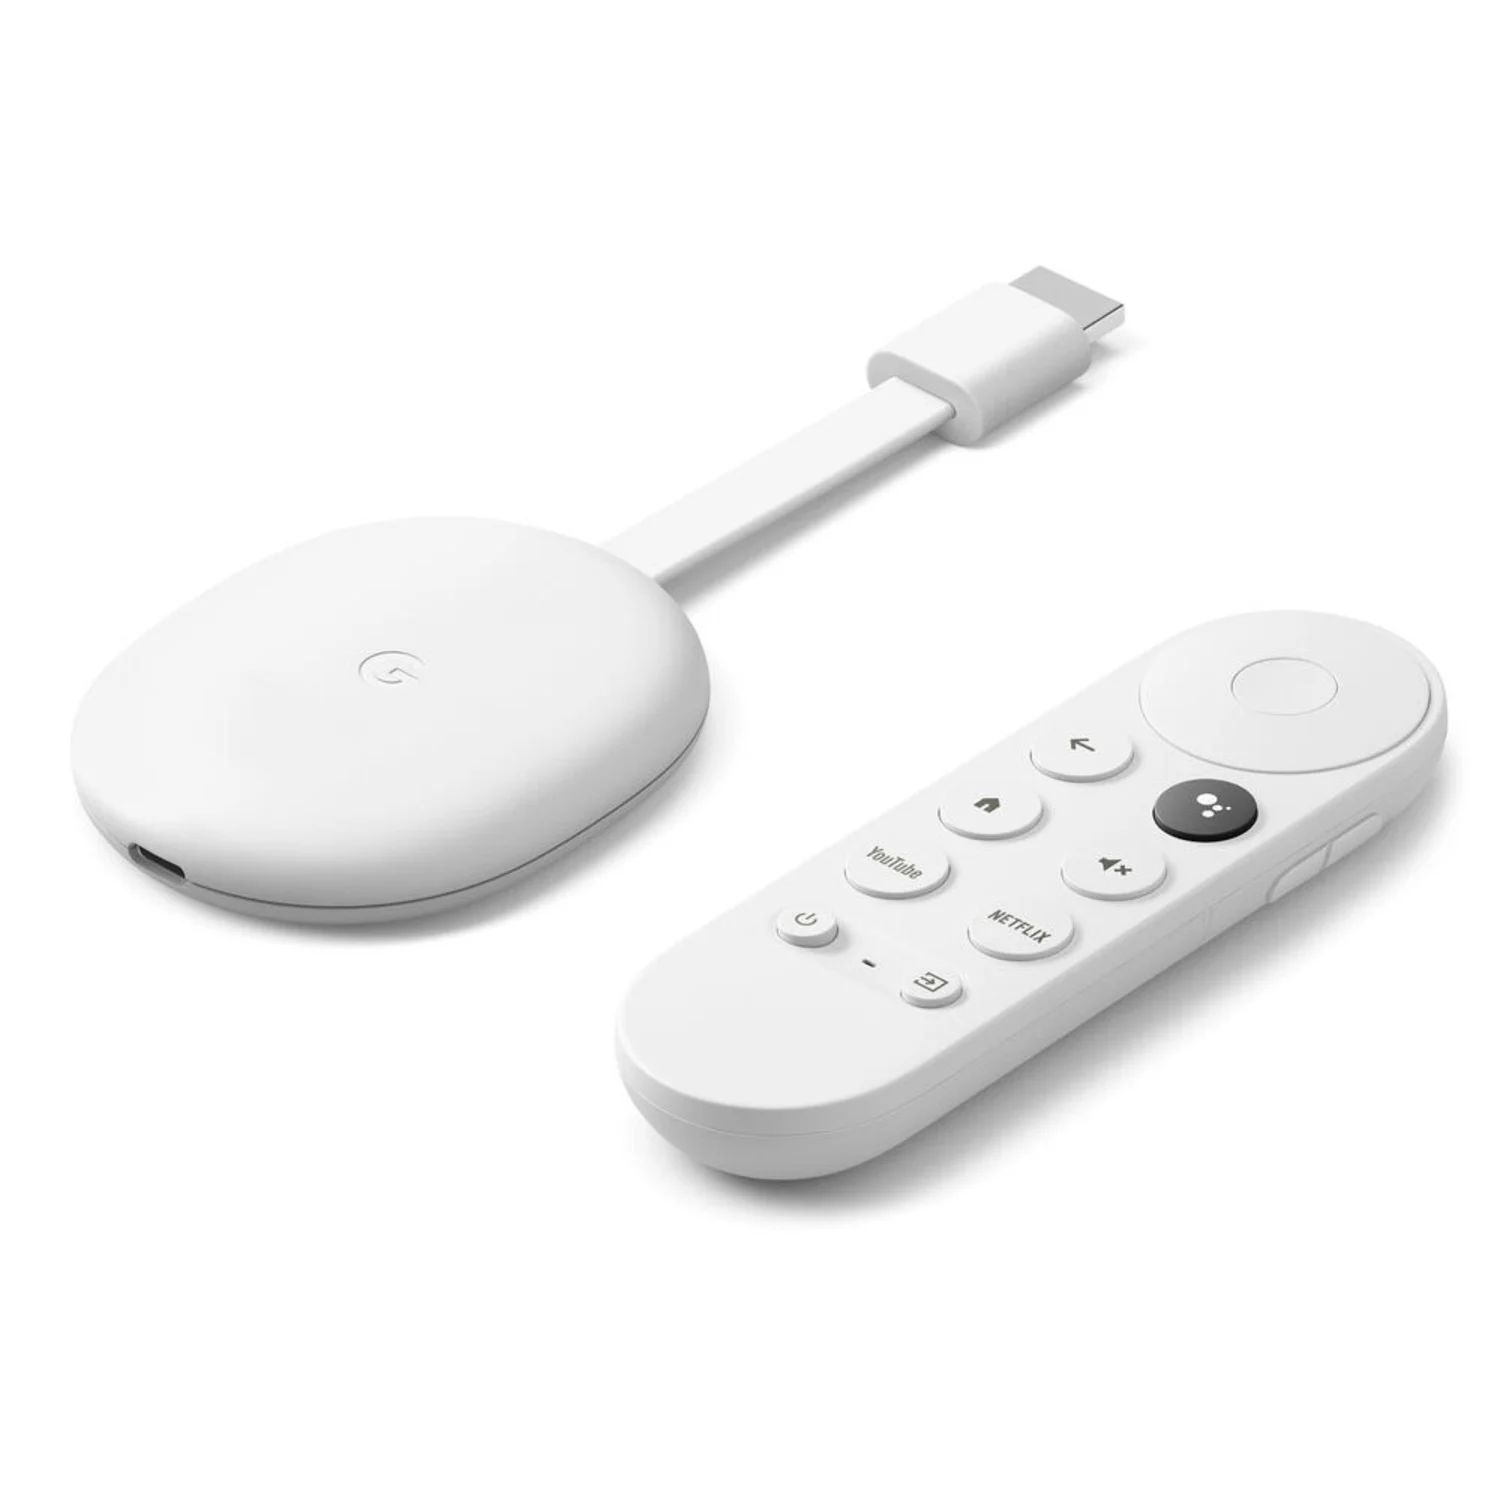 Google Chromecast 4rd Gen com Google TV - Branco (GOOG-GAO1919) (US)